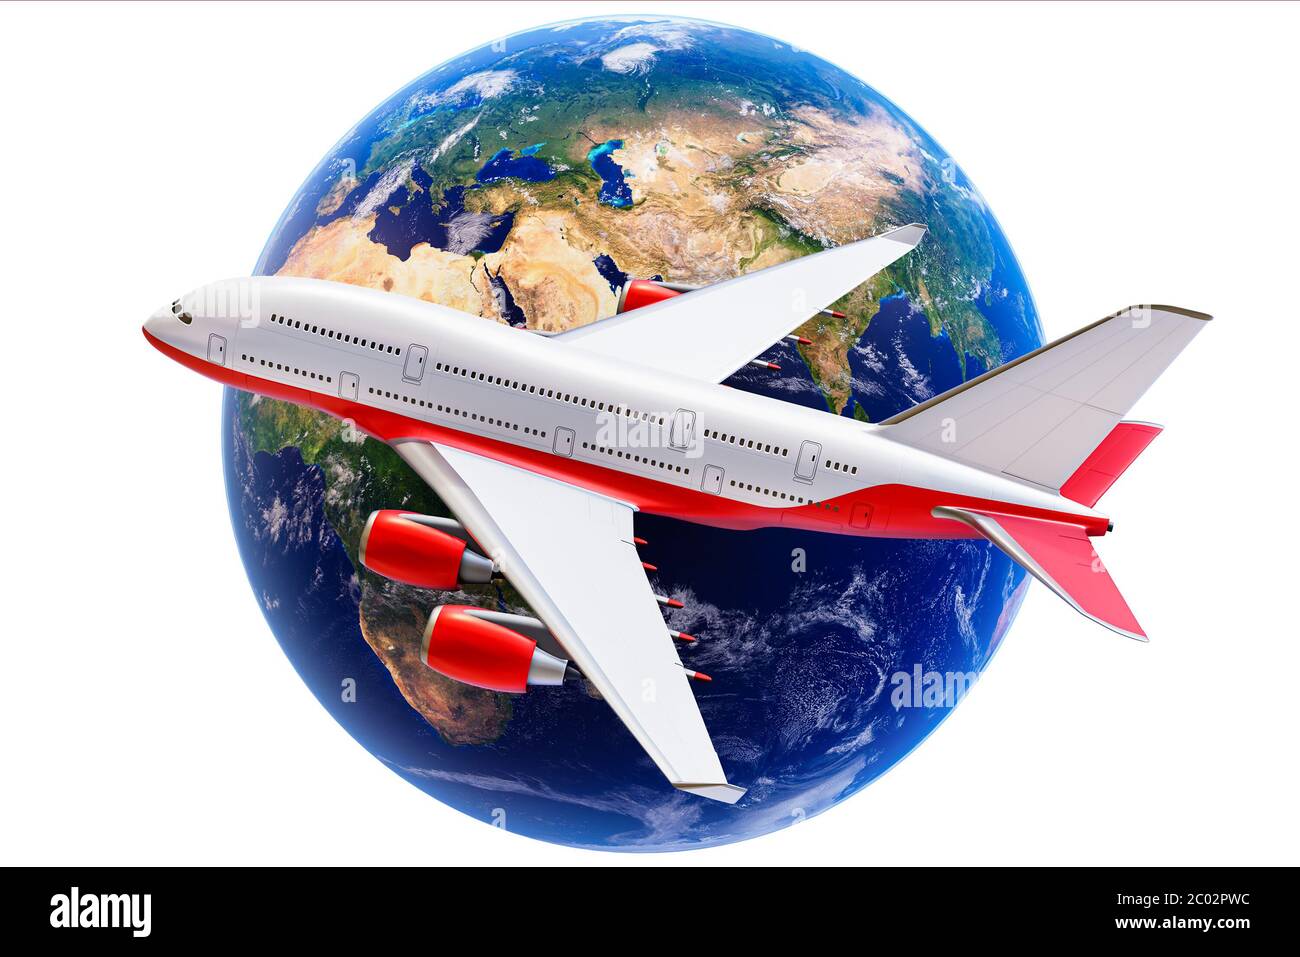 Flugzeug Seitenansicht und Erde isoliert auf einem weißen Hintergrund 3D-Rendering Illustration.Global Transport, weltweit Reise-und Tourismusindustrie con Stockfoto